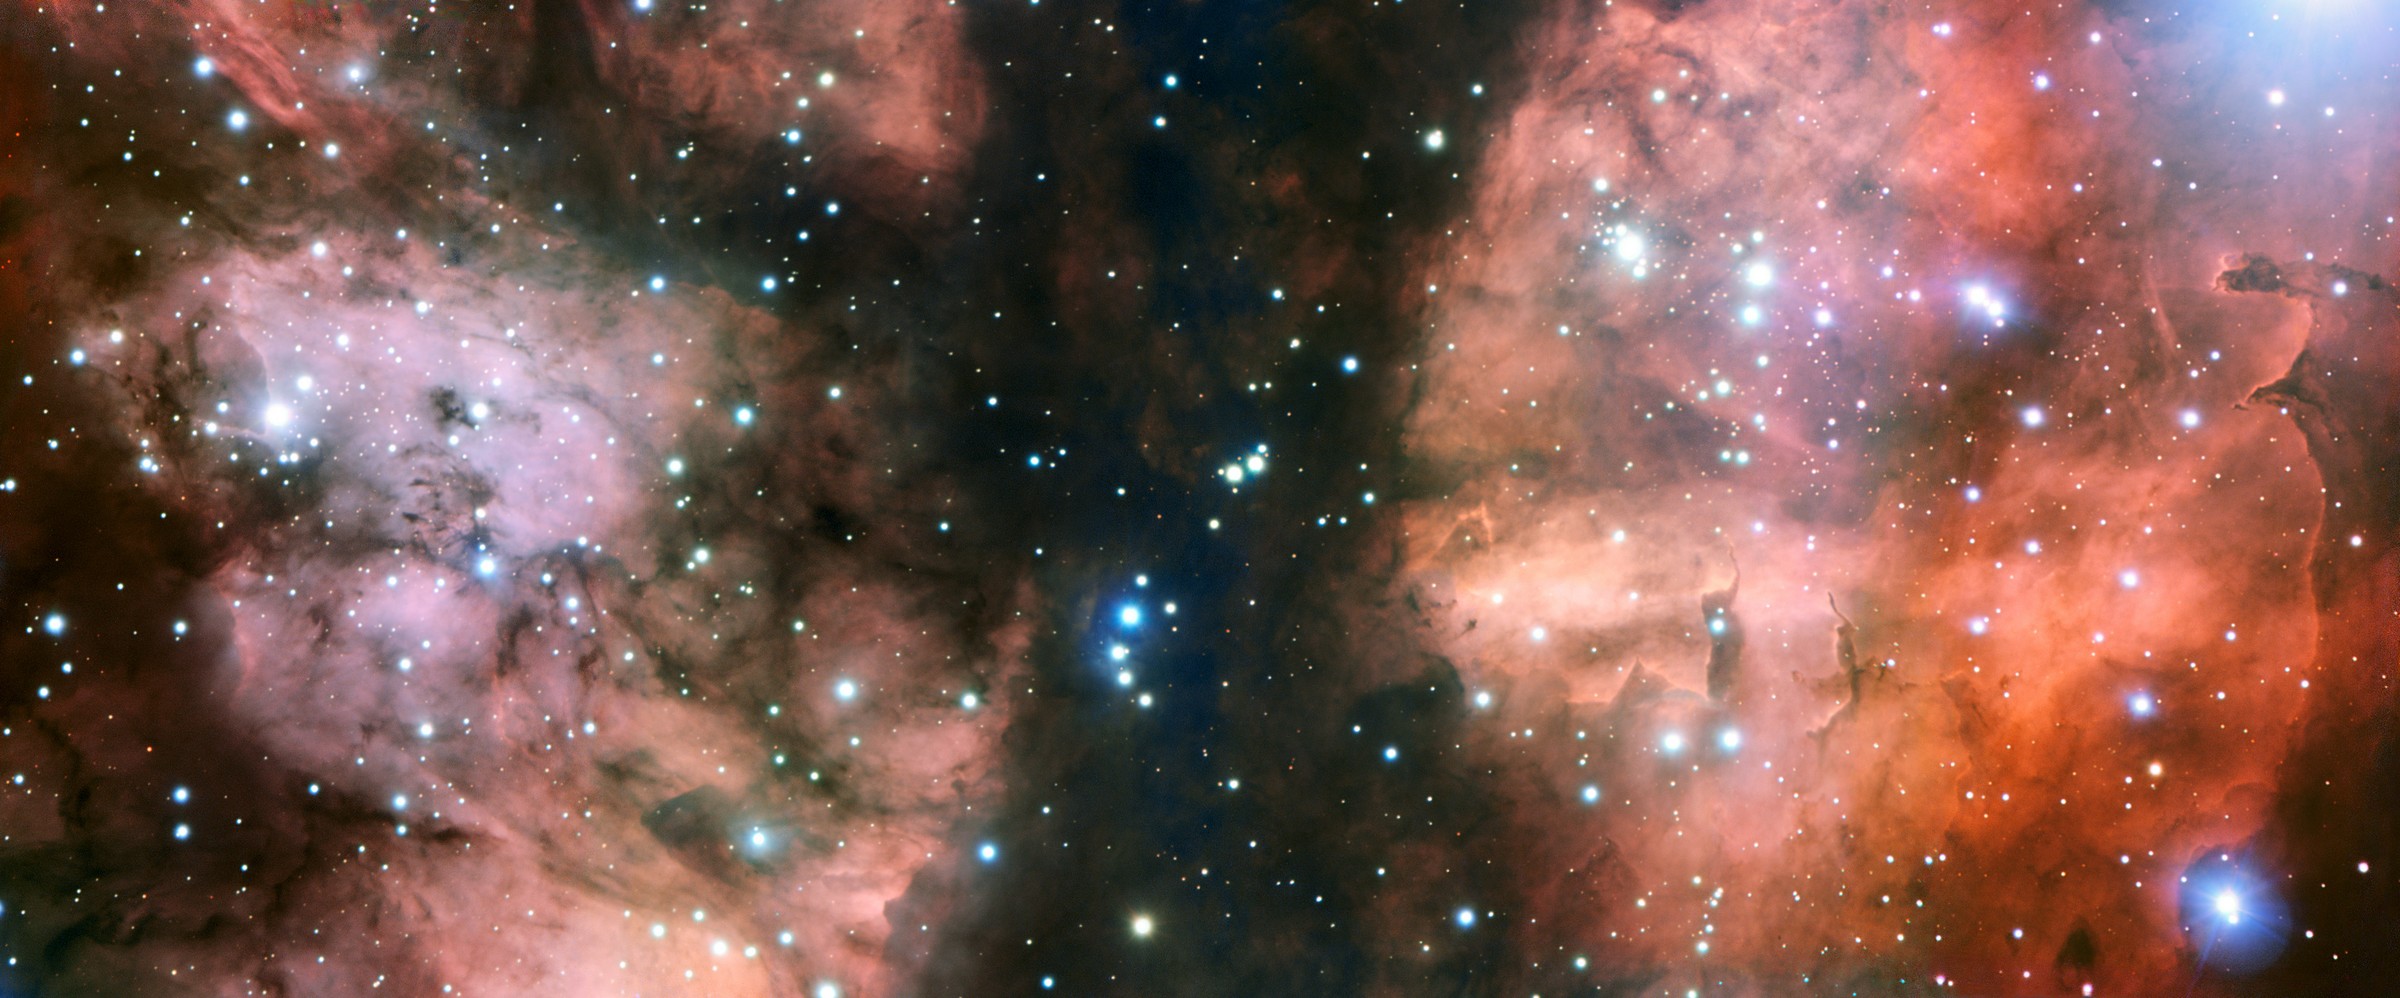 Le très grand télescope de l'ESO, le VLT, a pris l'image la plus détaillée d'une partie spectaculaire de la nurserie stellaire appelée NGC 6357. L'image montre de nombreuses jeunes étoiles chaudes, des nuages de gaz lumineux et des formations de poussière bizarres sculptées par le rayonnement ultraviolet et les vents stellaires. © ESO